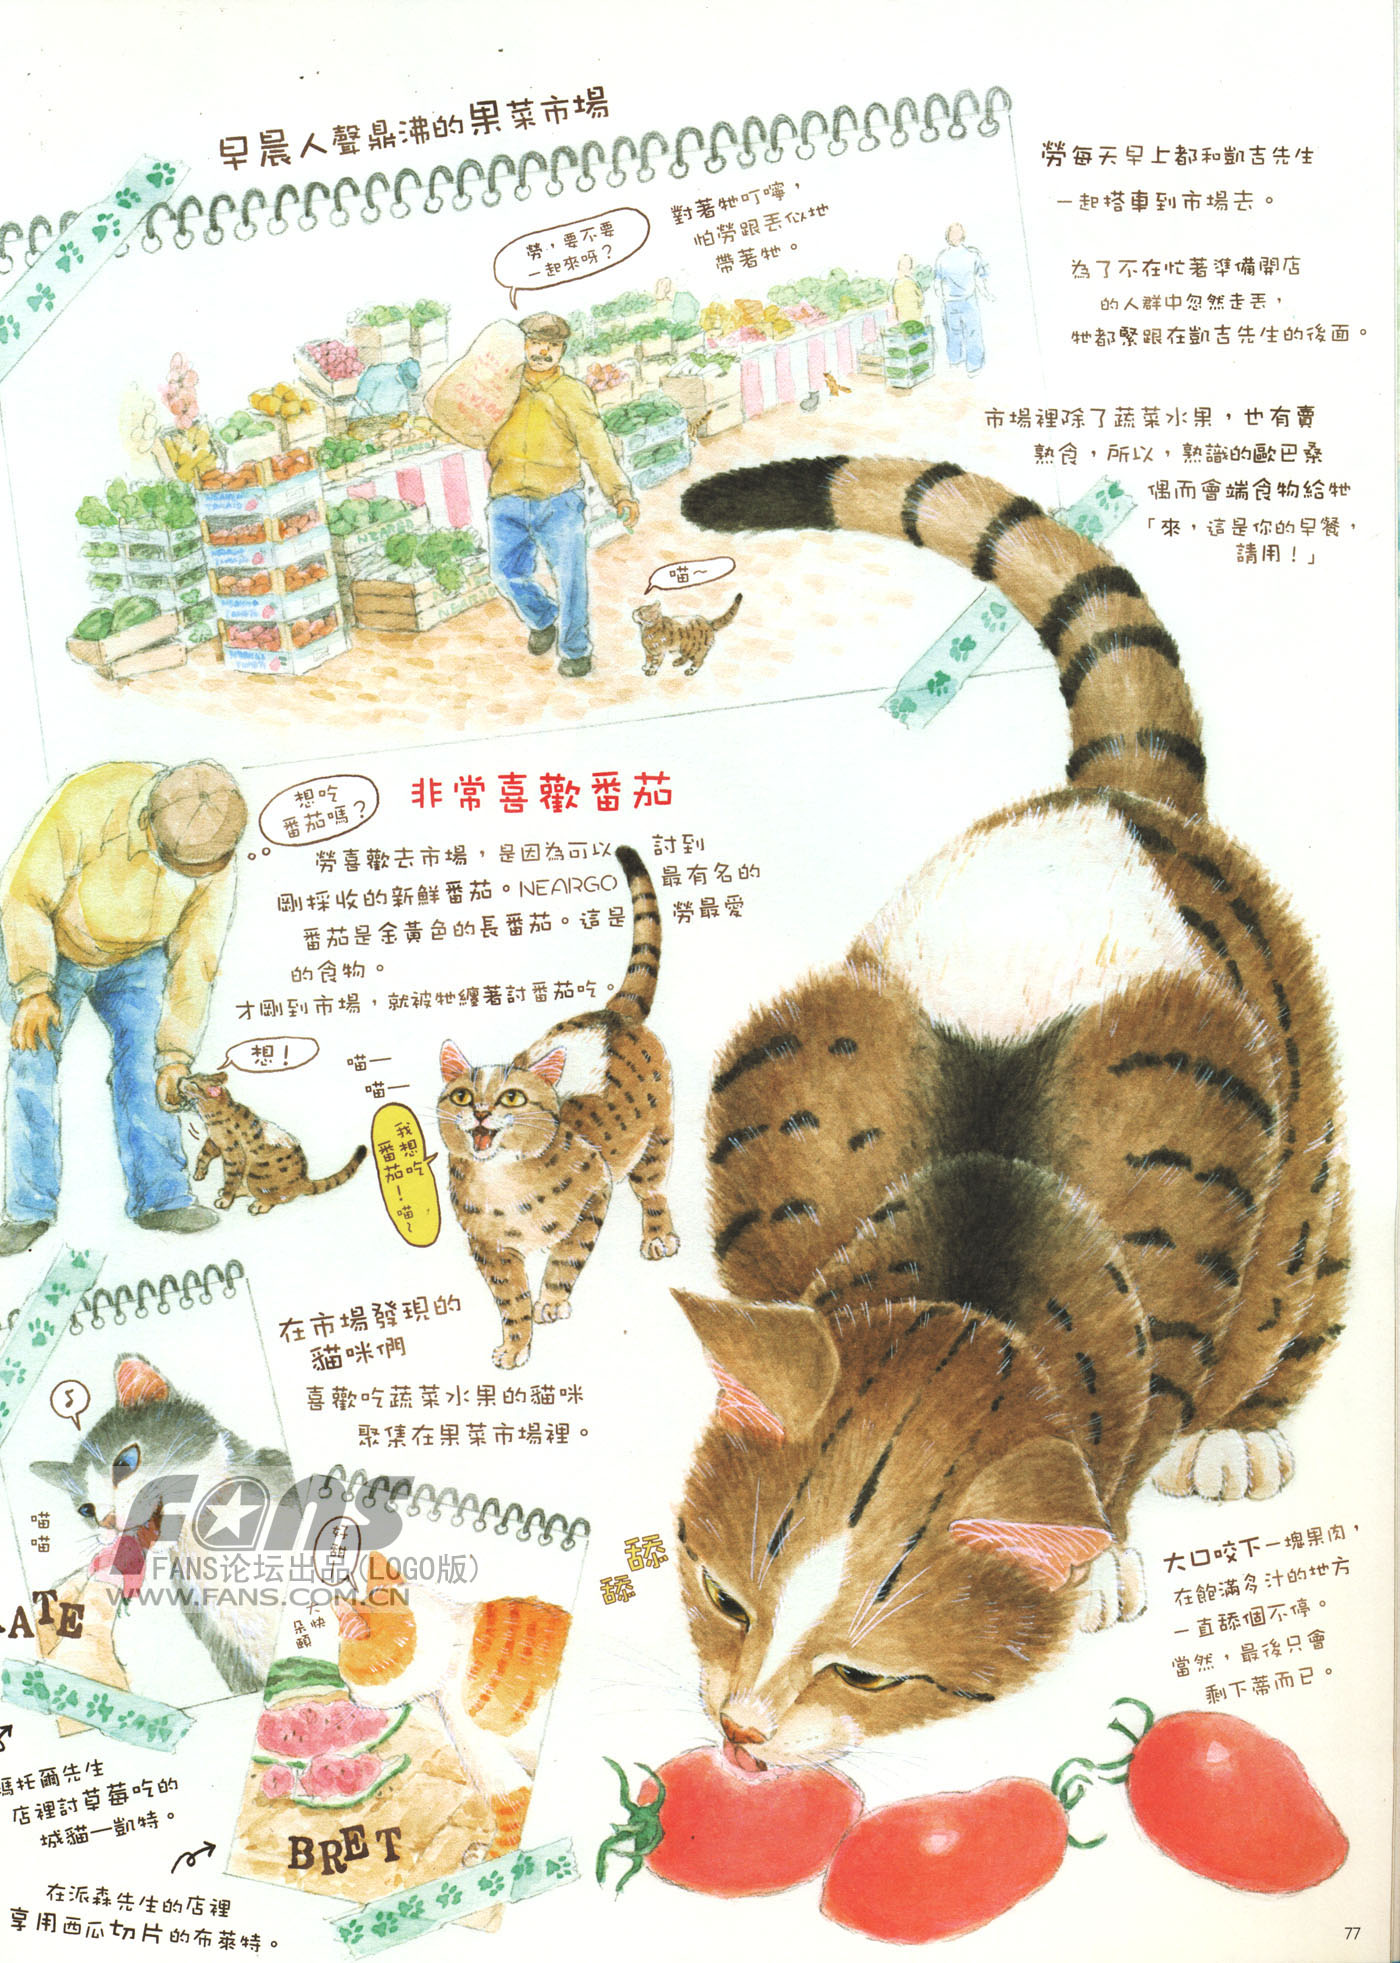 猫漫画图片大全(9)-猫猫萌图-屈阿零可爱屋